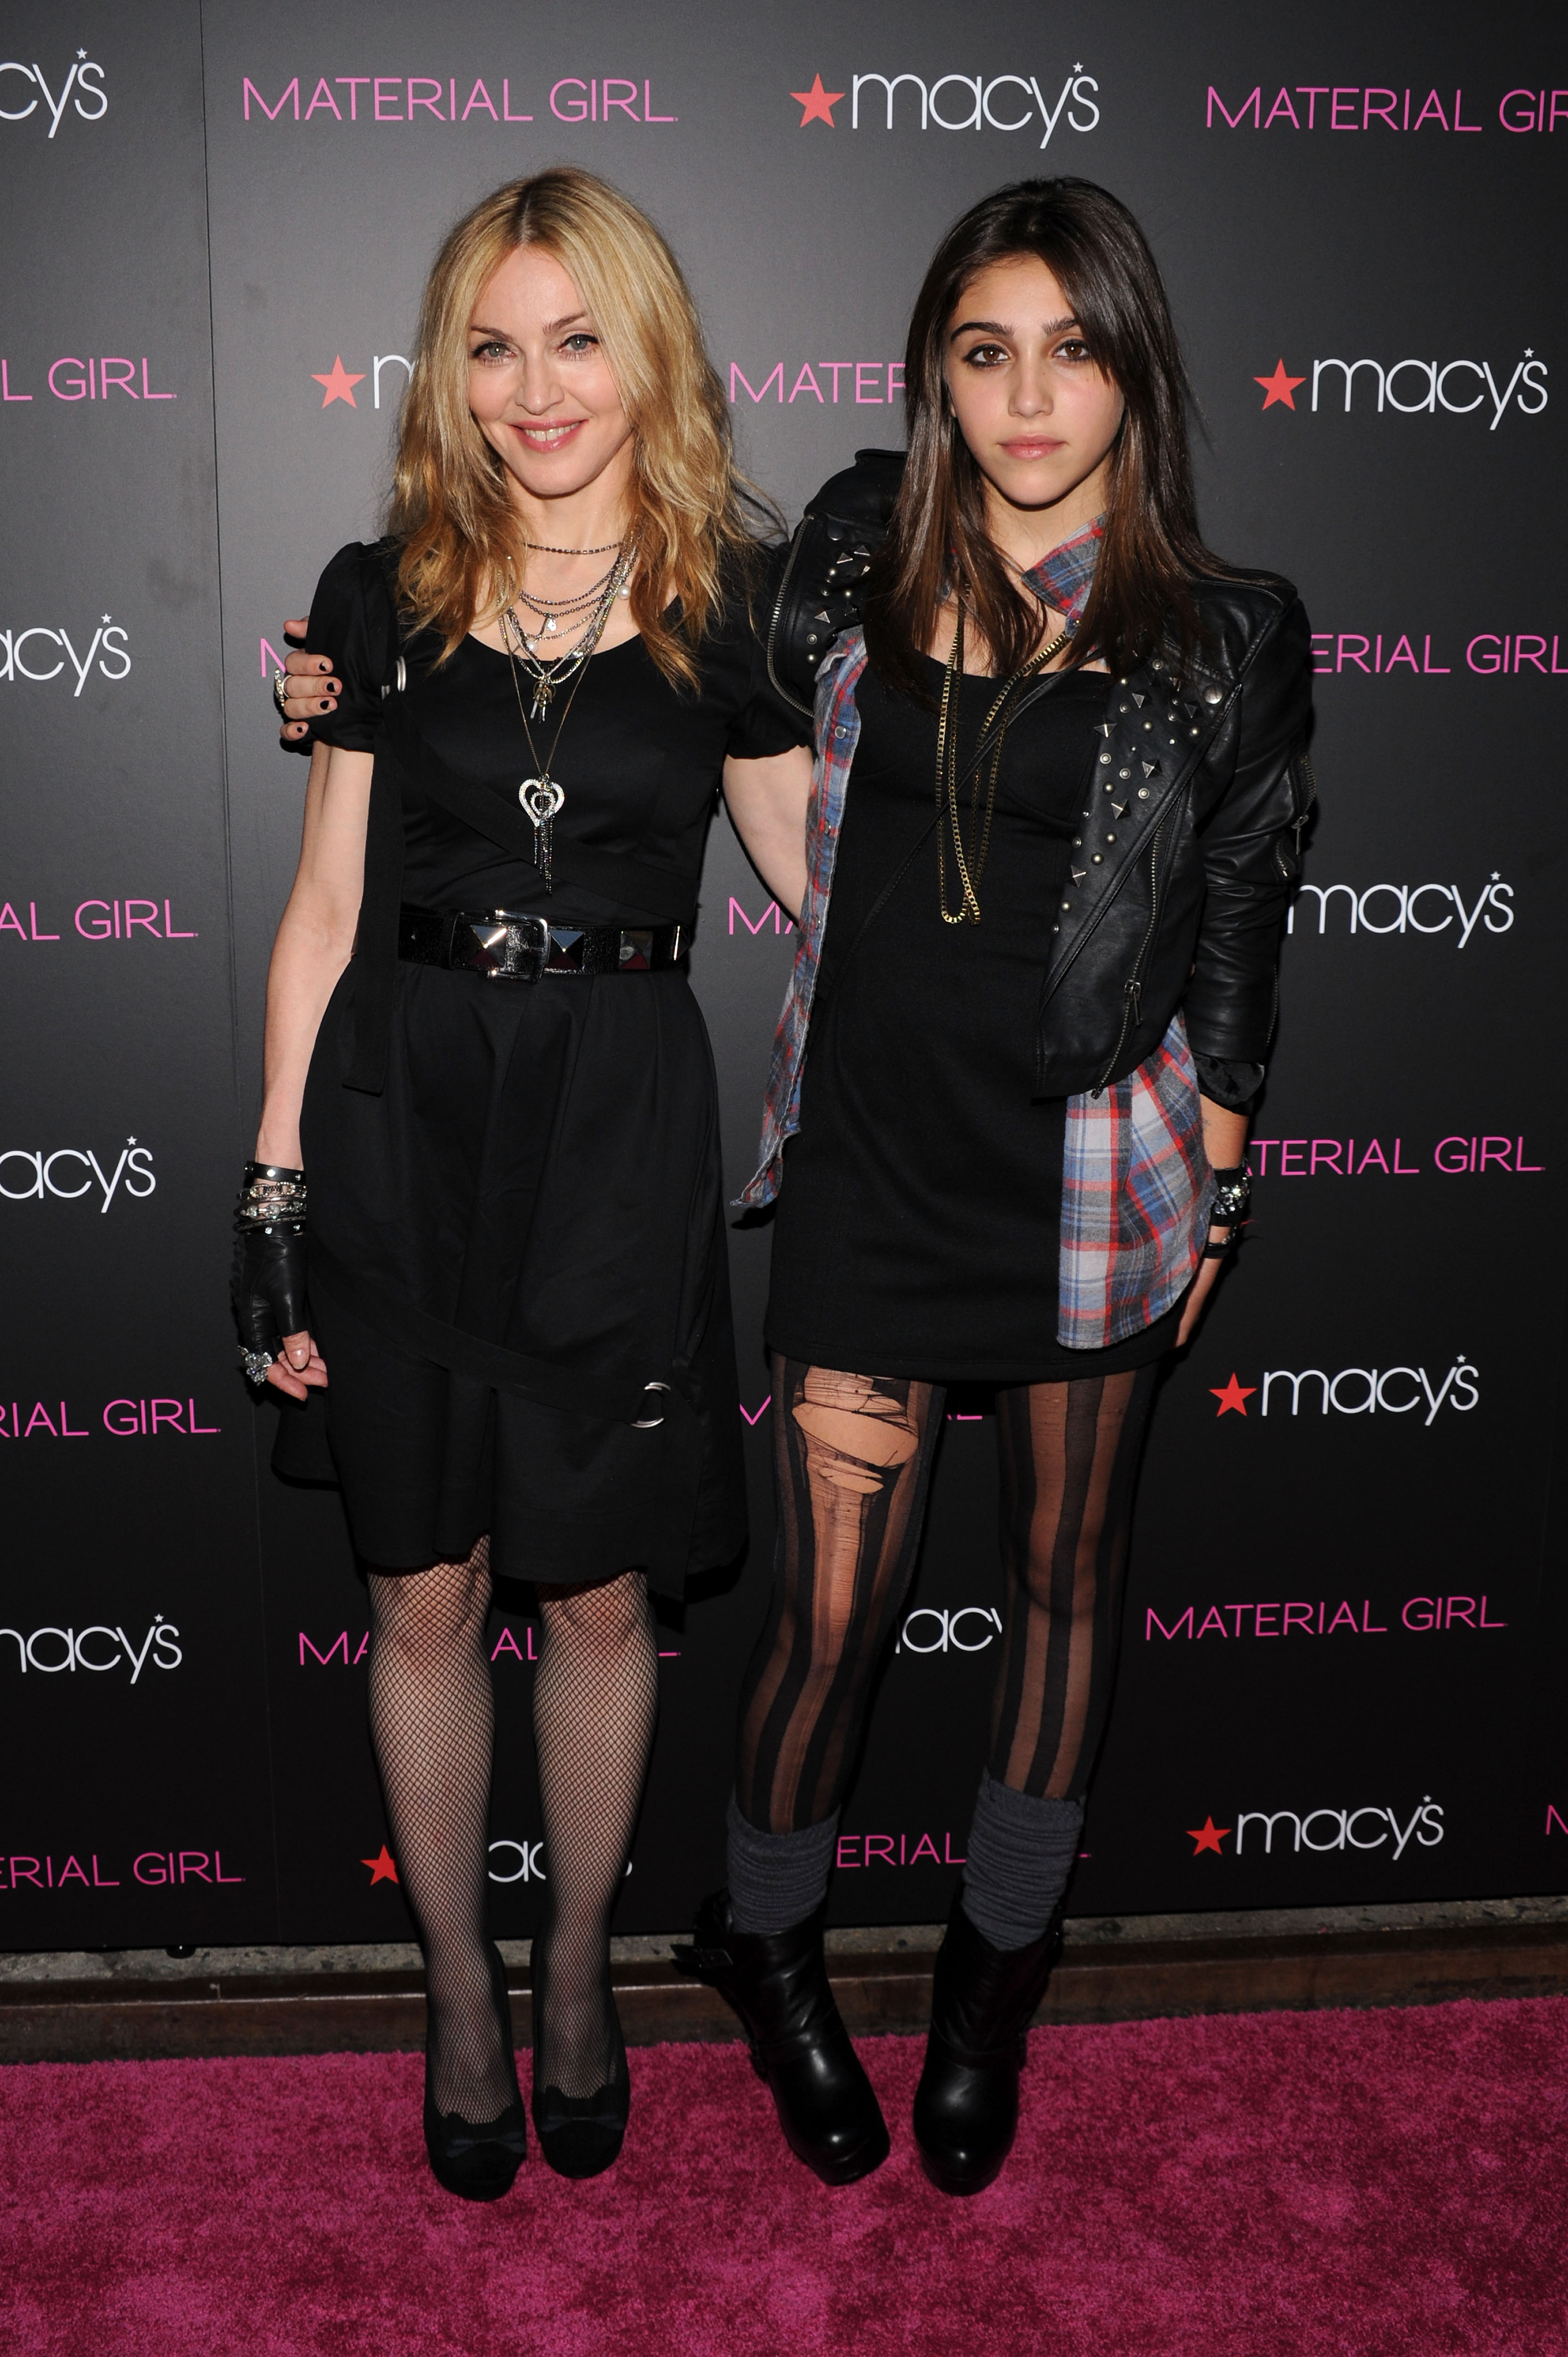 Madonna et Lourdes "Lola" Leon le 22 septembre 2010 à New York | Source : Getty Images